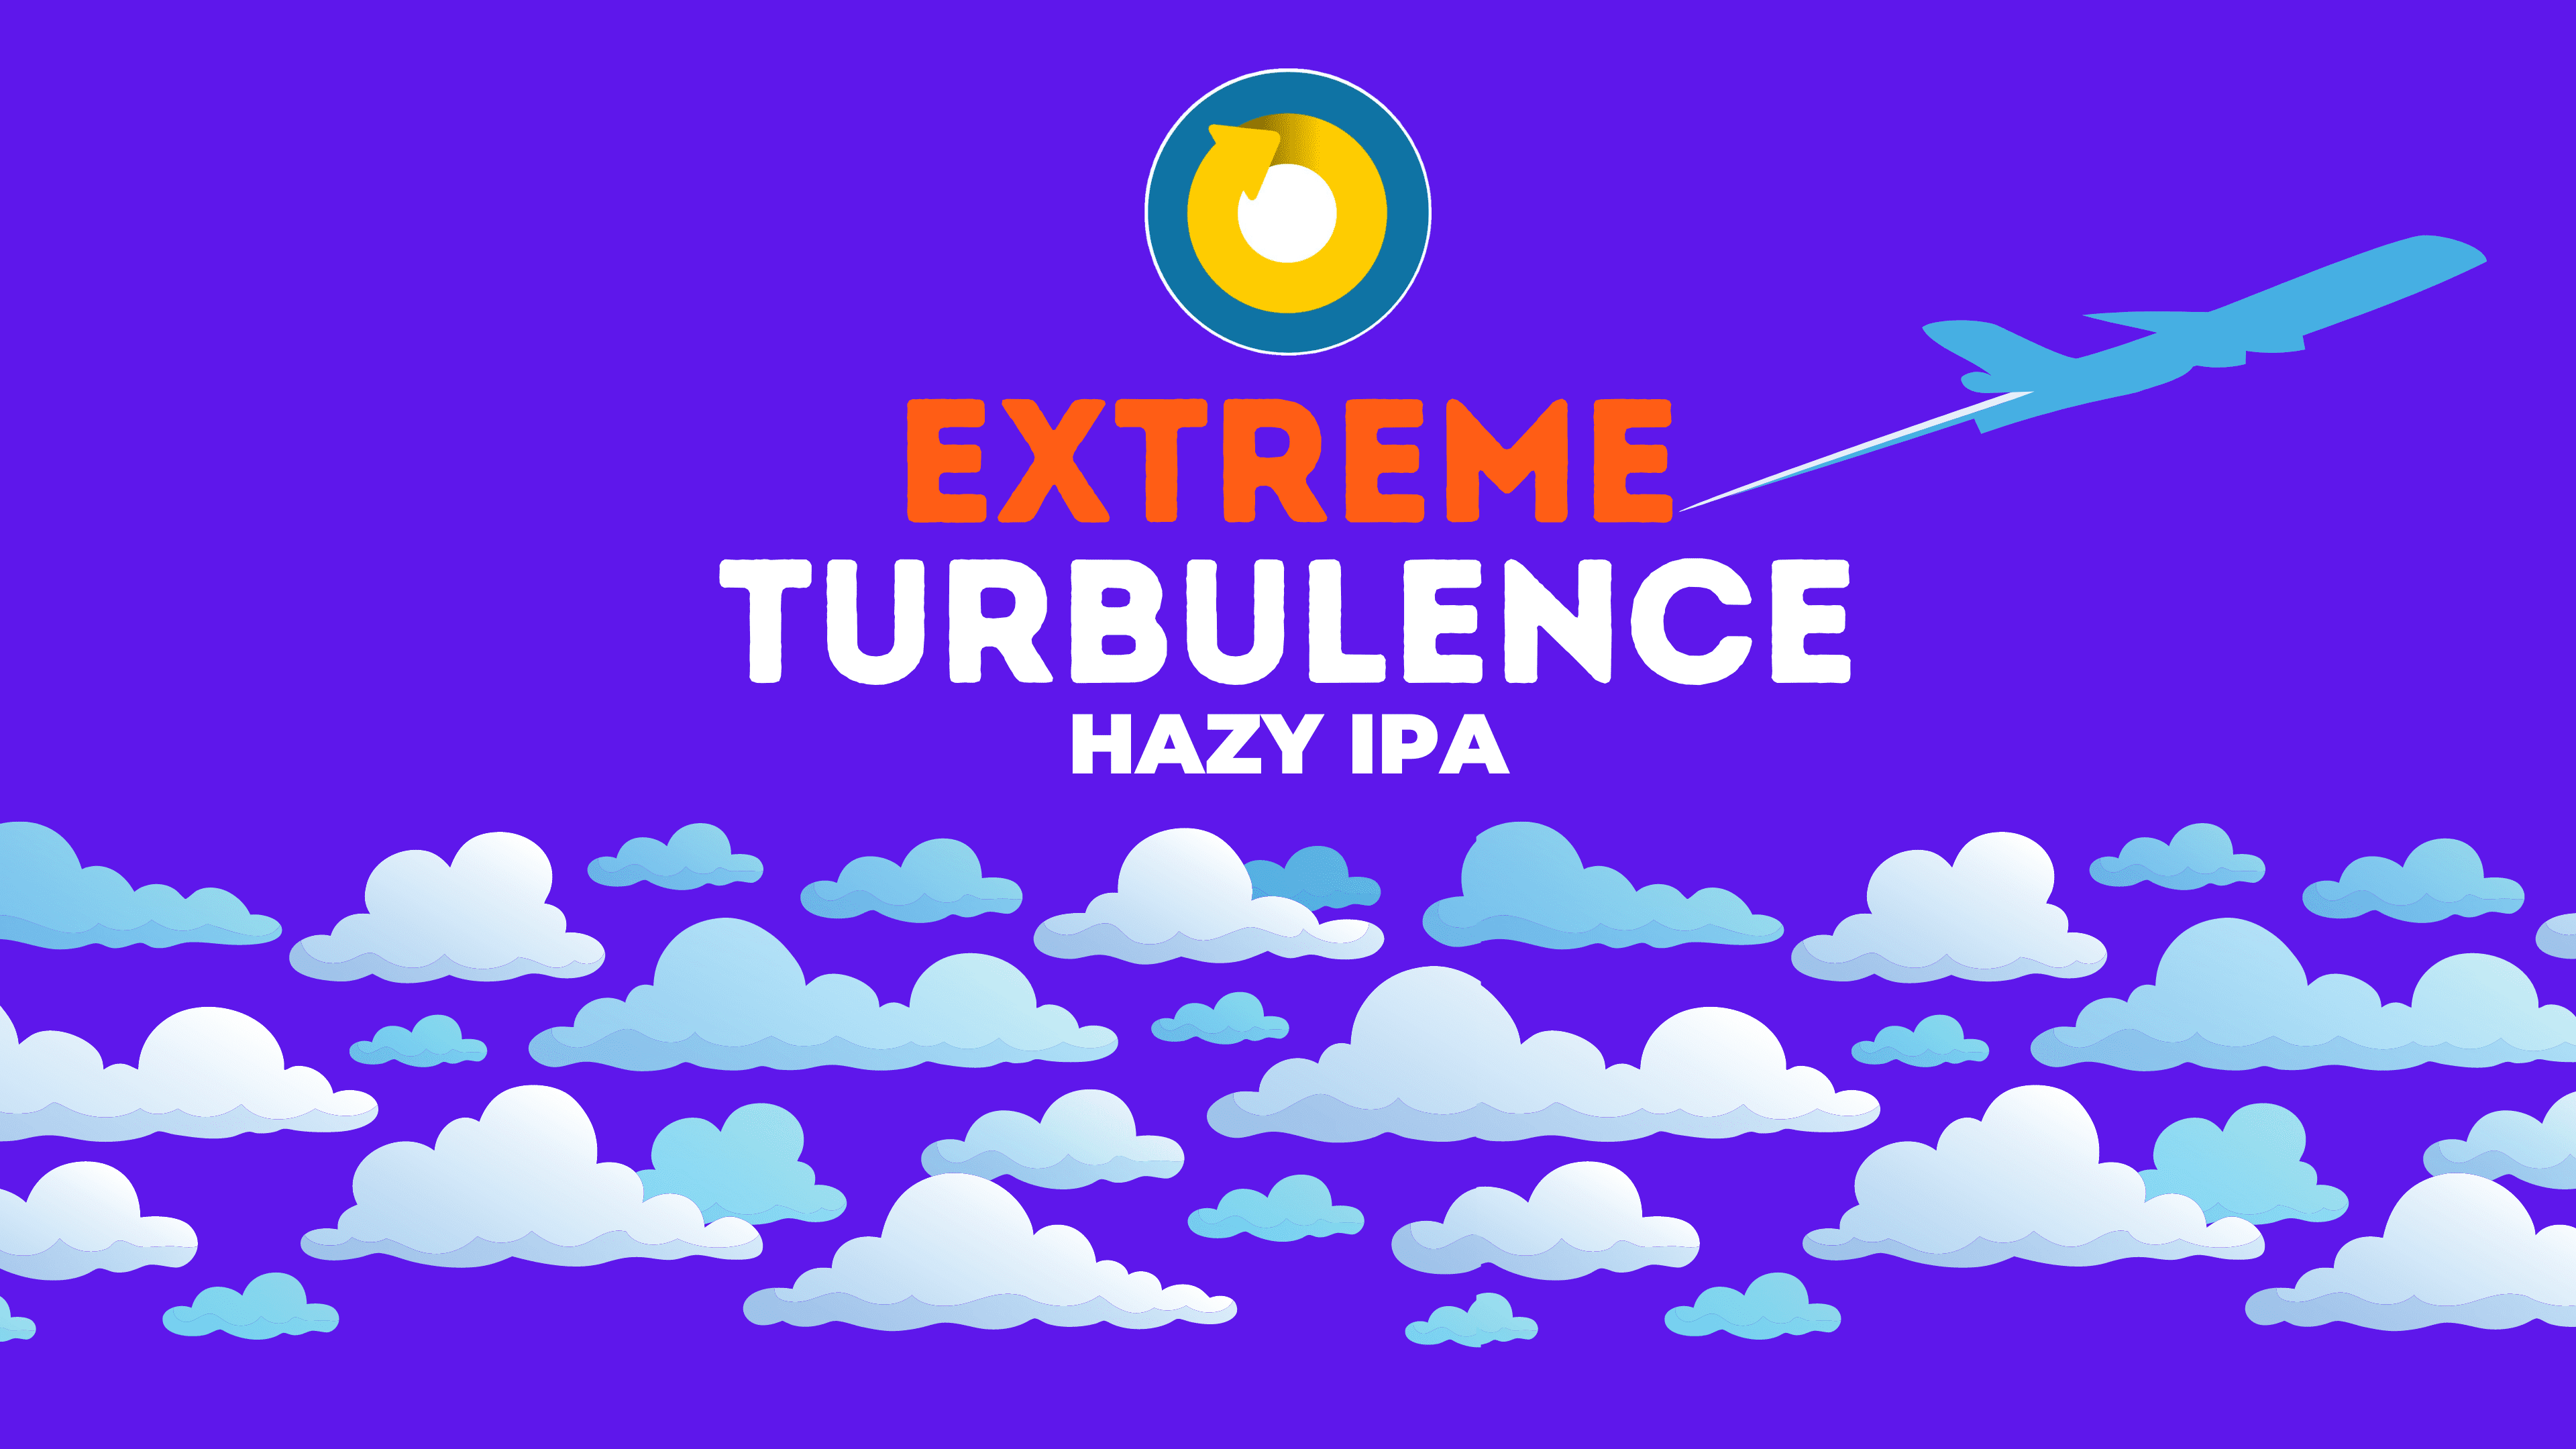 On Rotation Extreme Turbulence Hazy IPA Release